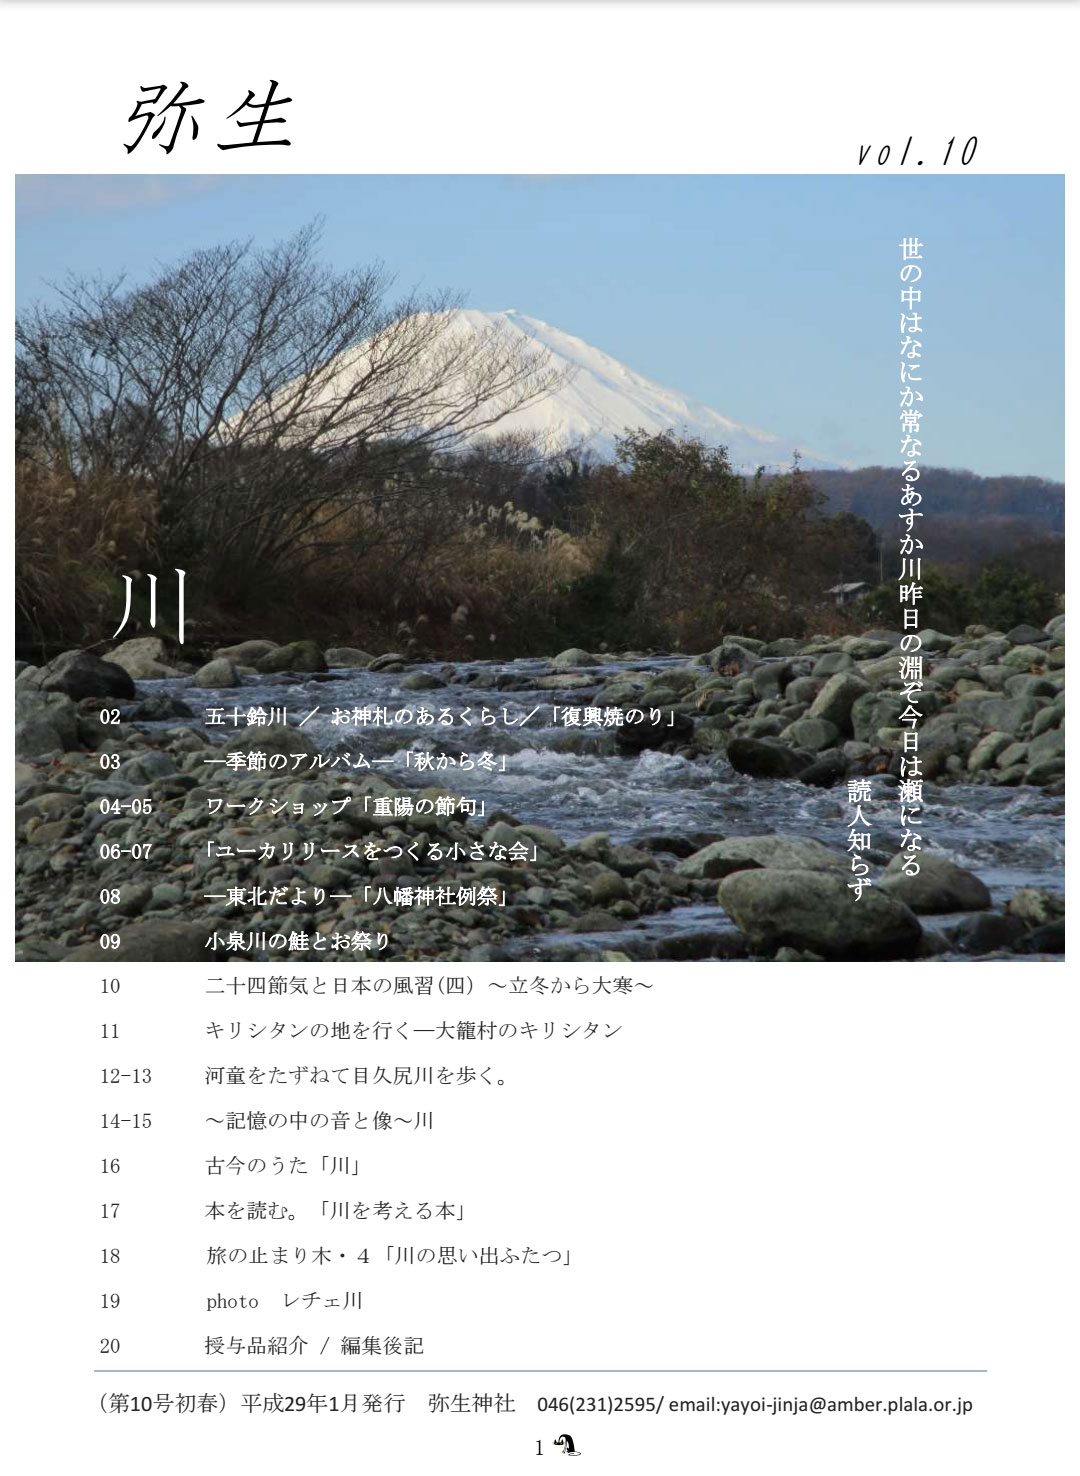 社報「弥生」vol.10